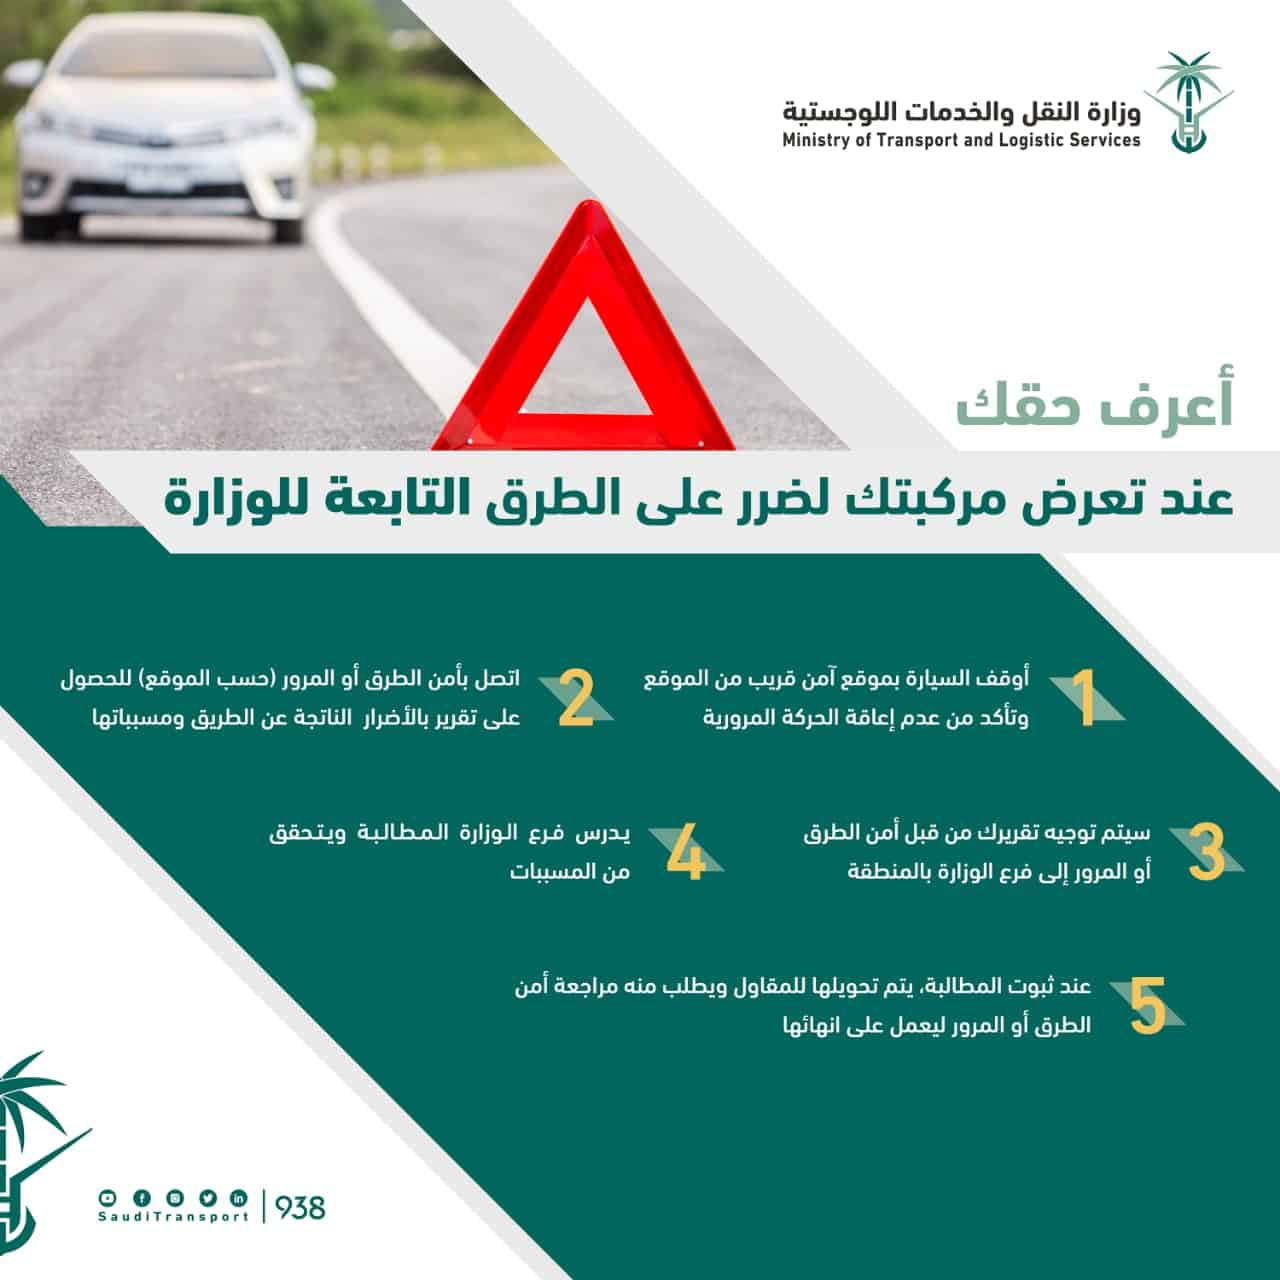 وزارة النقل تحدد 5 خطوات للاعتراض في حال تعرض المركبة للضرر على الطرق التابعة لها